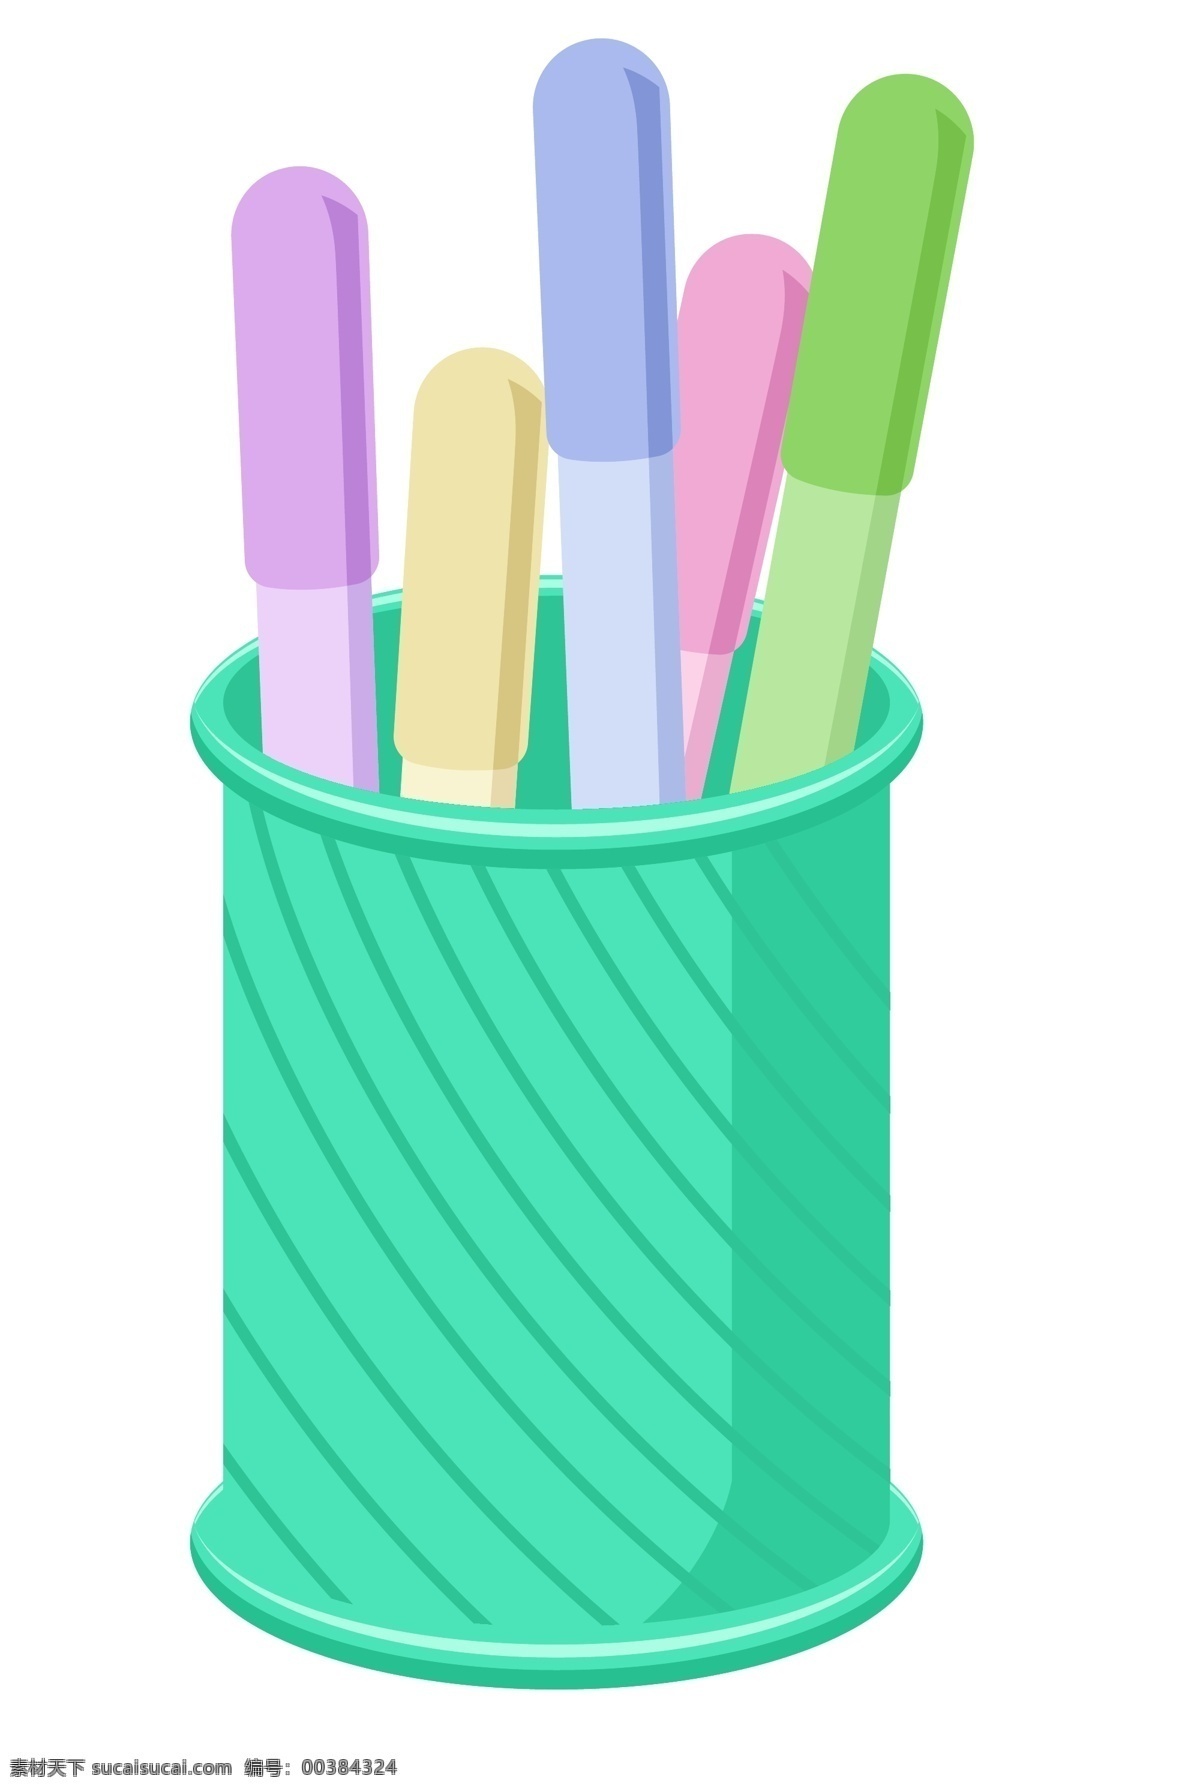 办公用品 笔筒 插画 绿色的笔筒 彩色的中性笔 卡通插画 上班用品 办公用具 办公器具